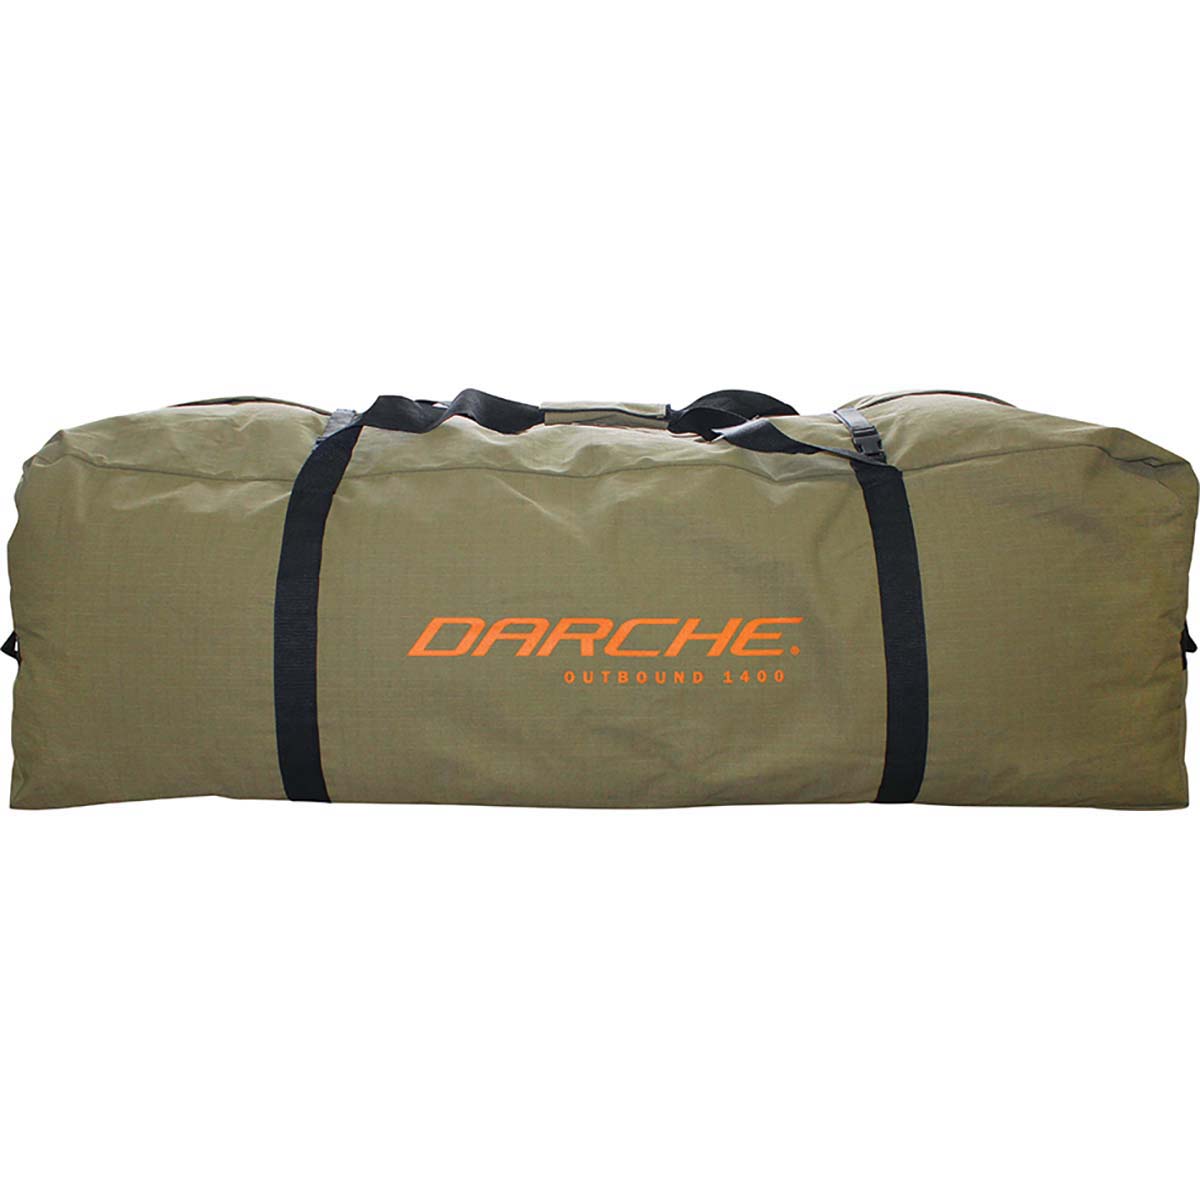 Darche Outbound 1400 Storage Bag